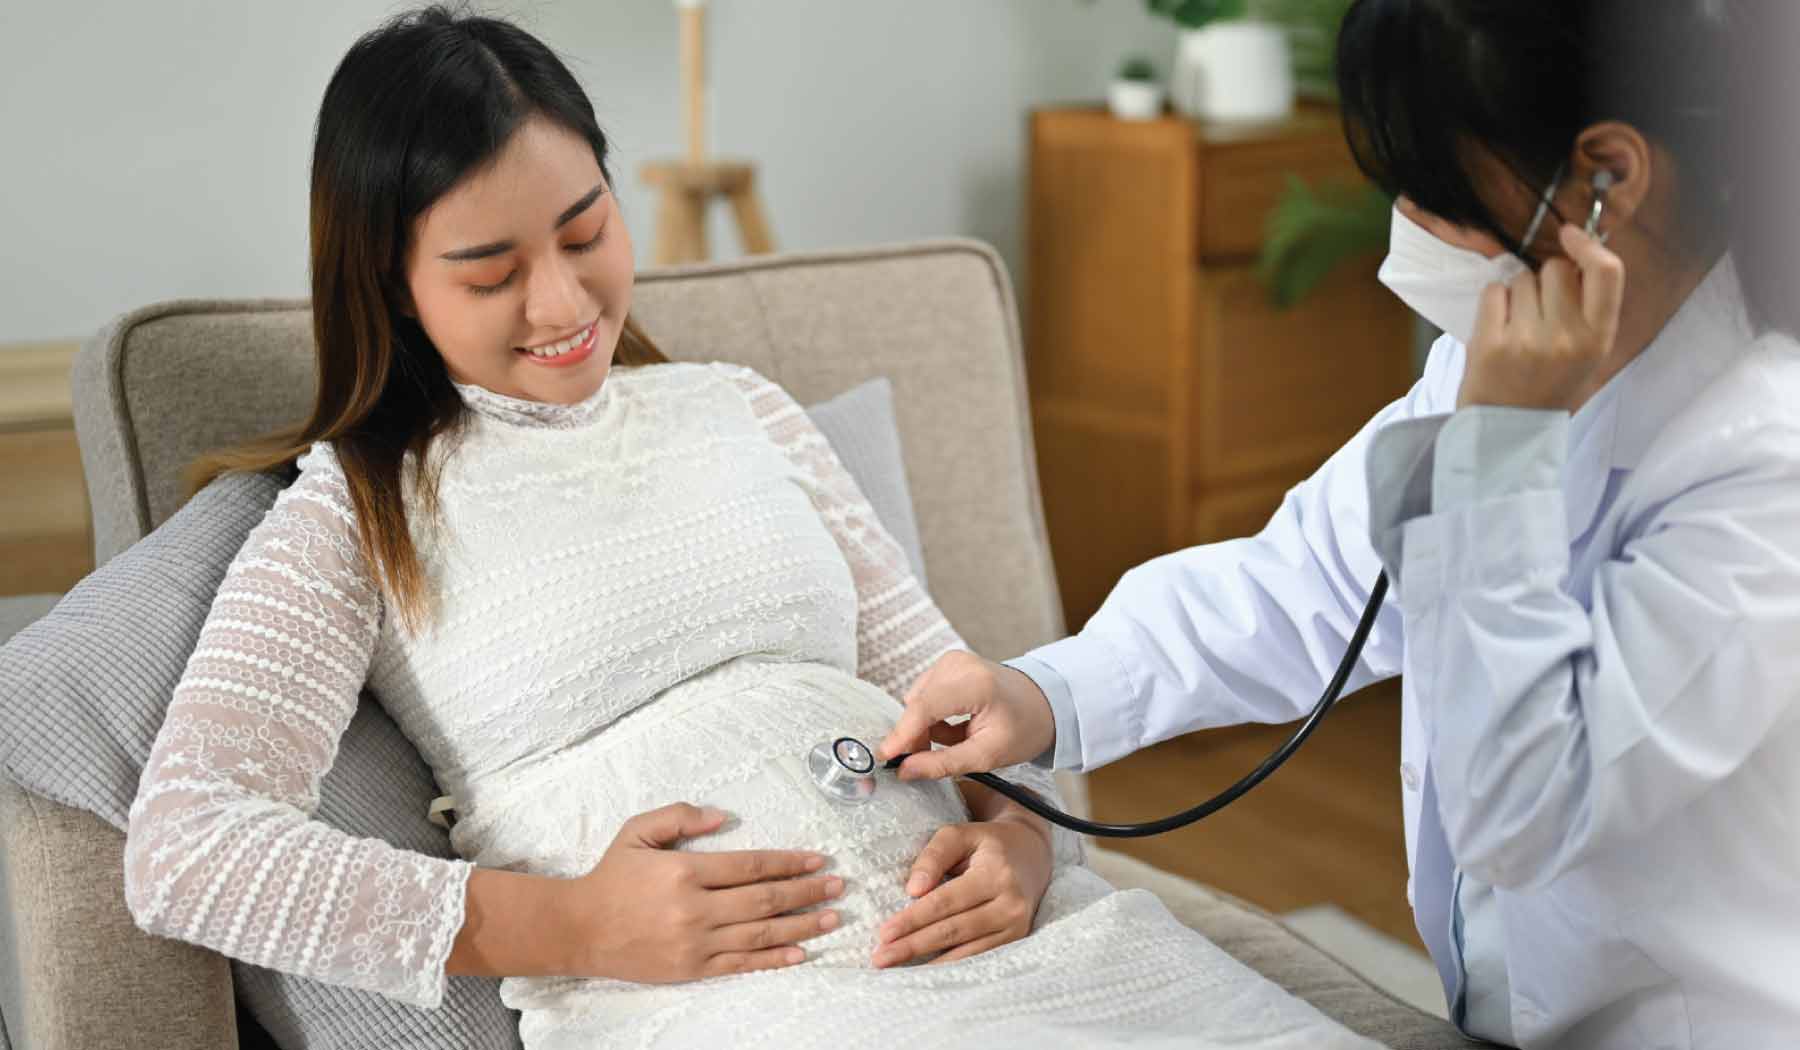 ควรมาพบแพทย์ตามการนัดหมายเพื่อป้องกันการตั้งครรภ์เกินกำหนด